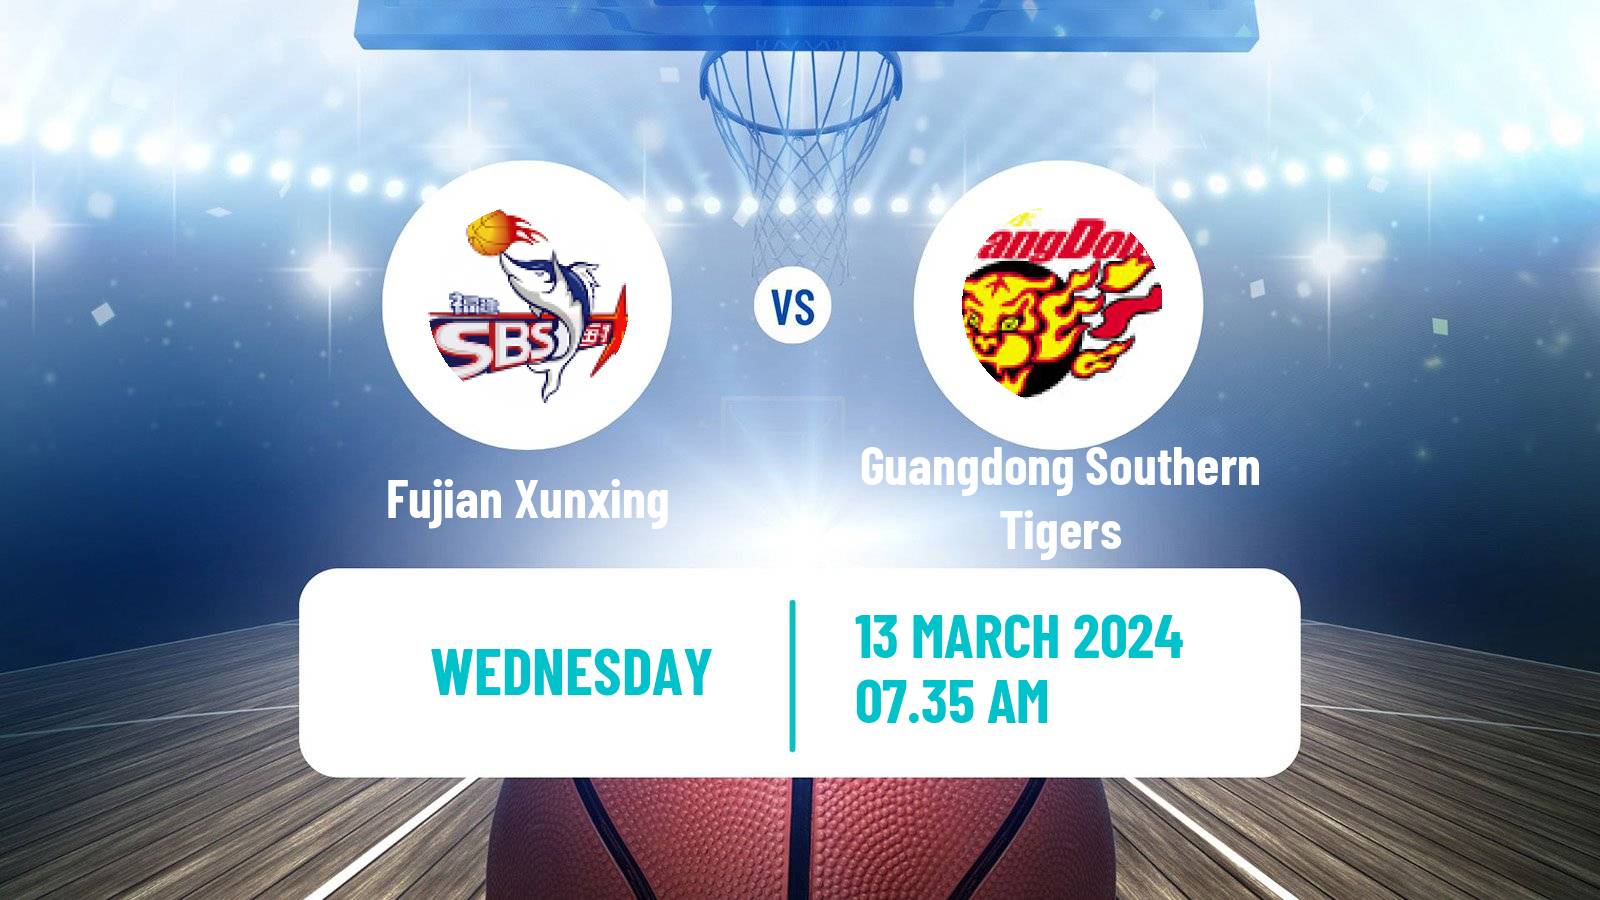 Basketball CBA Fujian Xunxing - Guangdong Southern Tigers